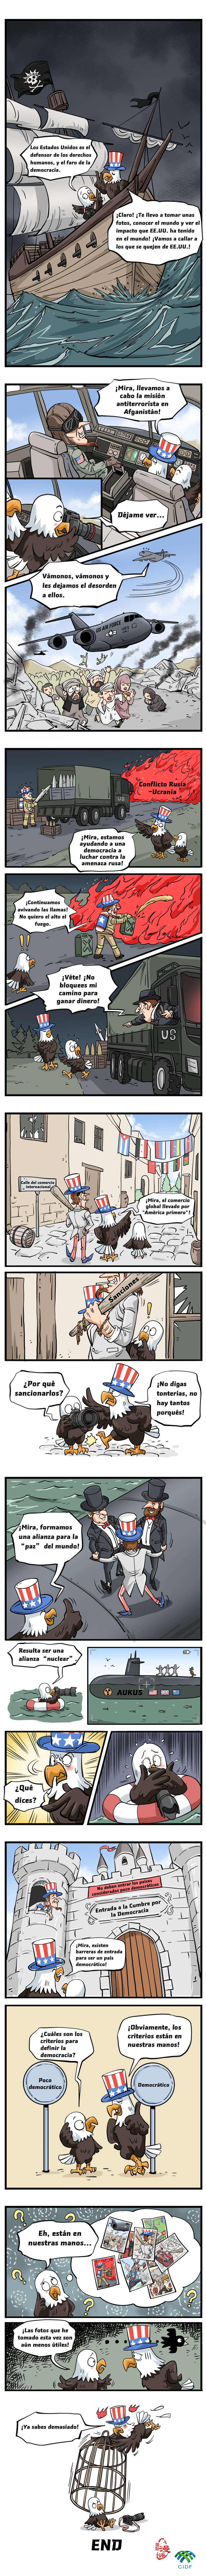 【Caricatura editorial】Tira cómica | La democracia americana bajo una falsa máscara (2)_fororder_西语版